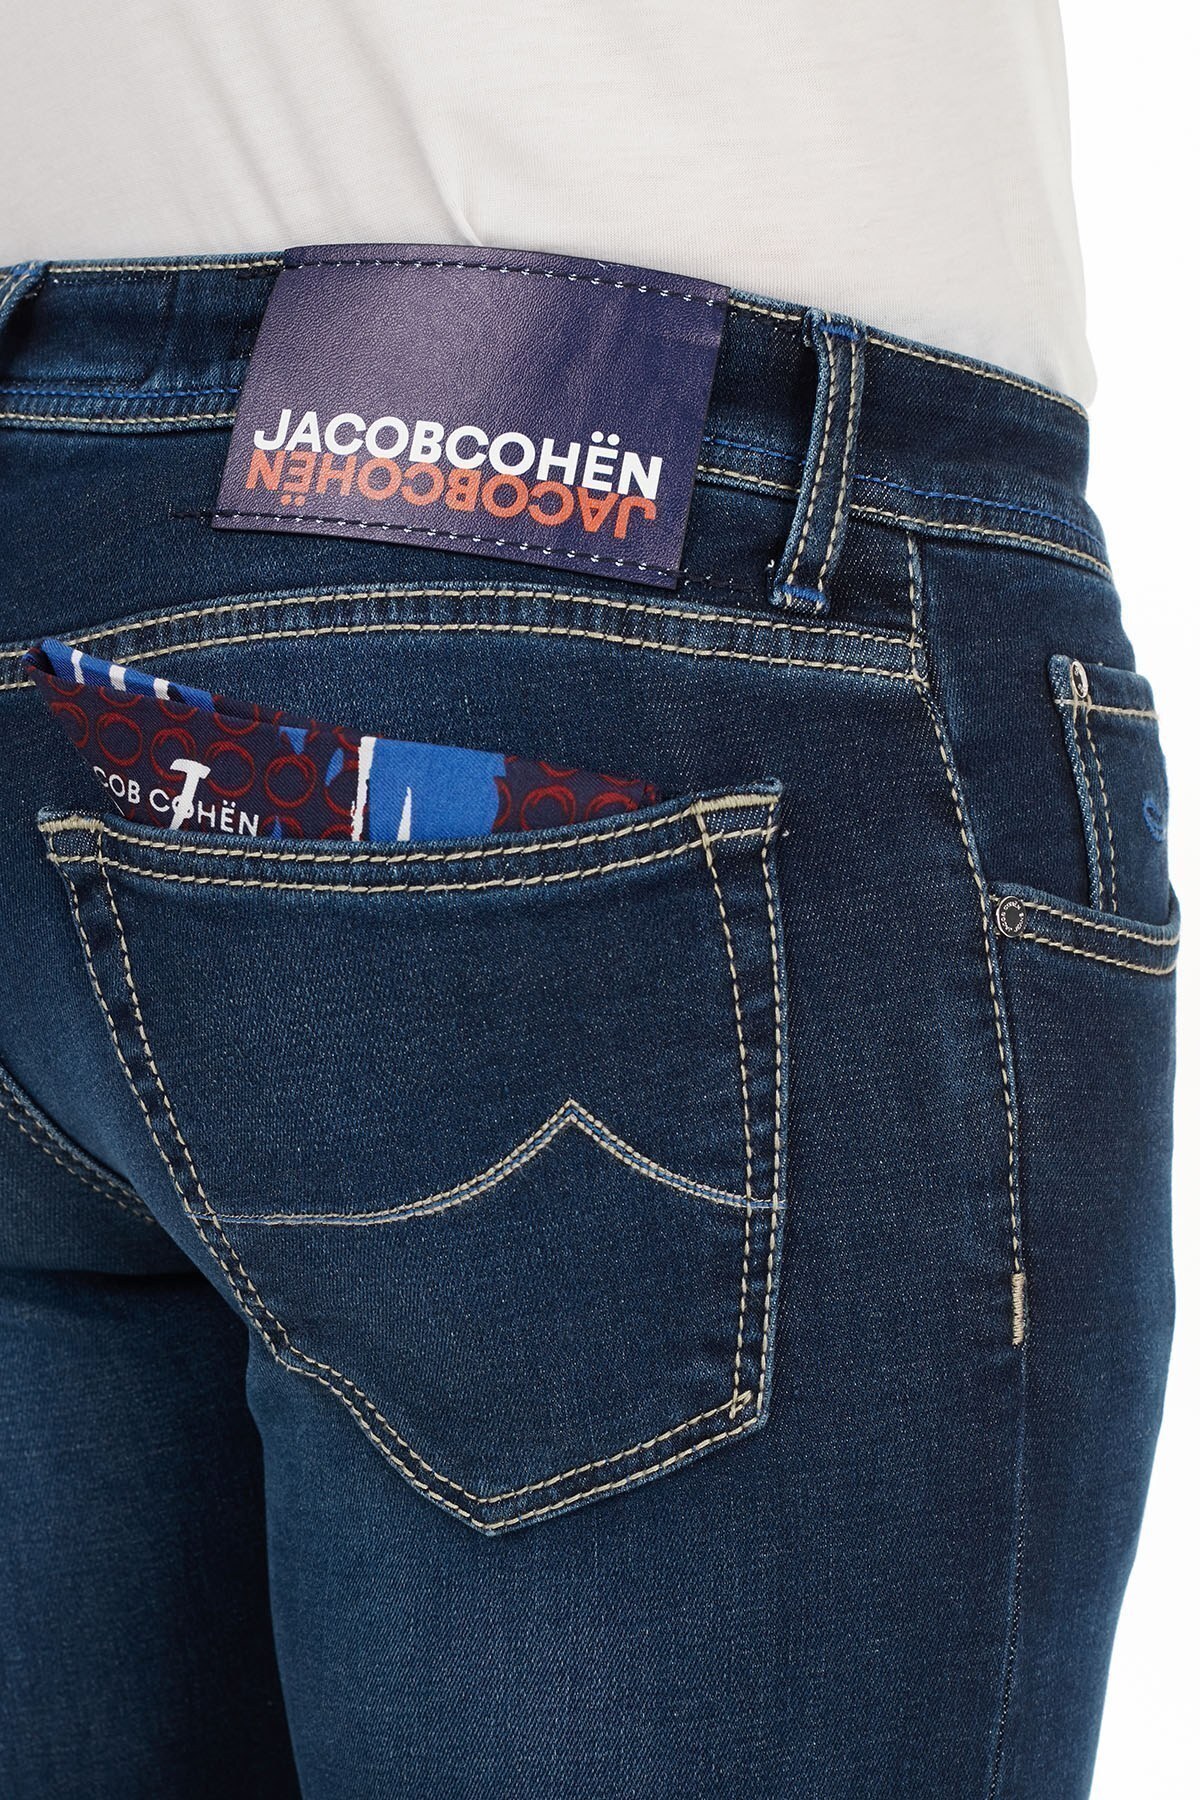 Jacob Cohen Slim Fit Pamuklu Jeans Erkek Kot Pantolon J622 SLIM 02050W1 LACİVERT